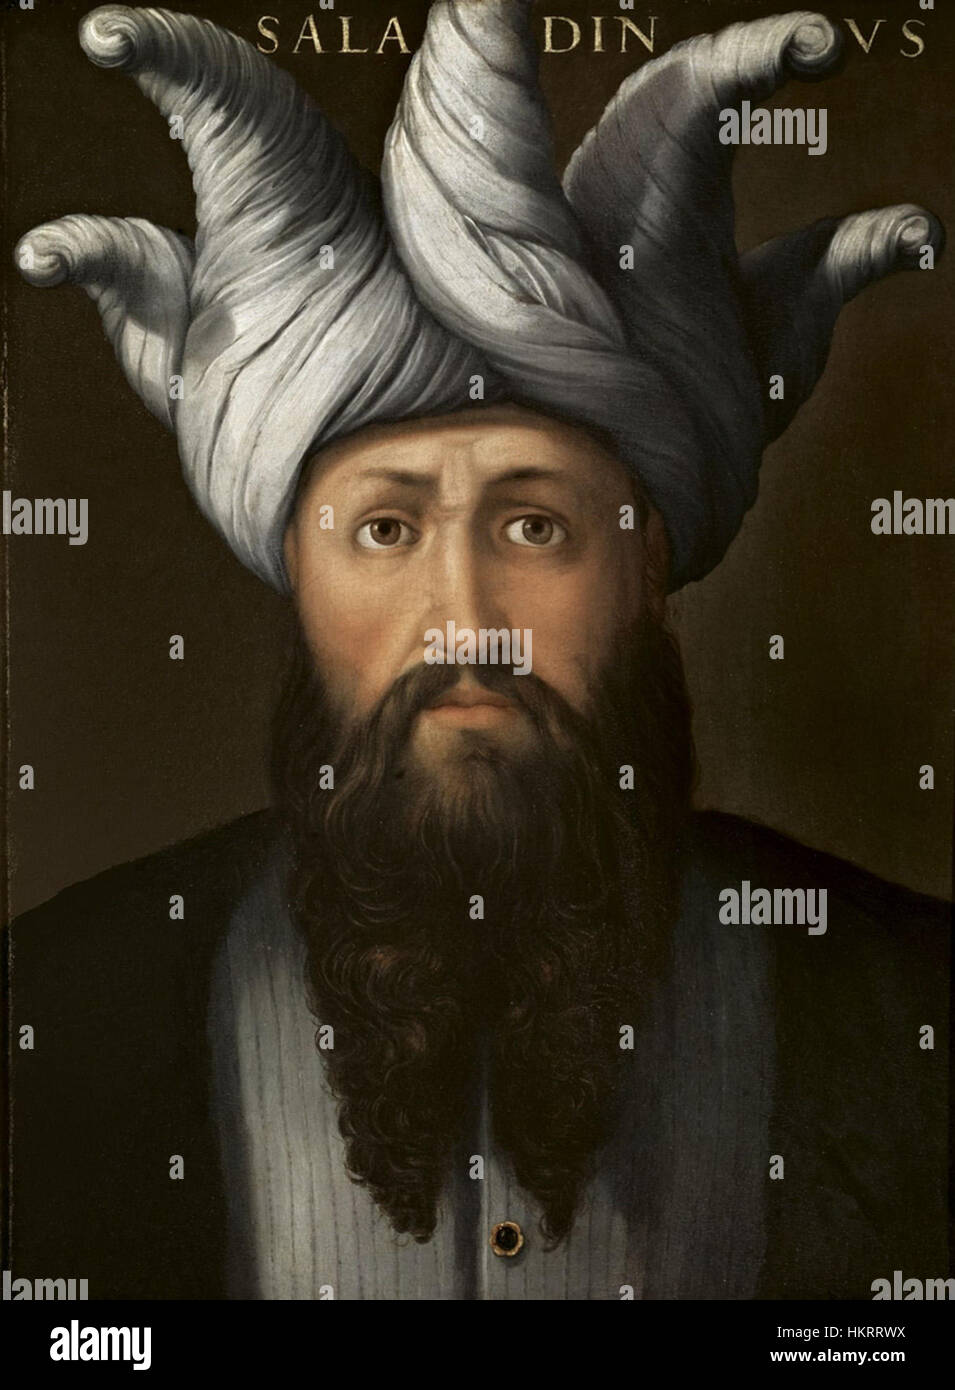 Cristofano dell'altissimo, Saladino, ante-1568 - Serie Gioviana Stockfoto